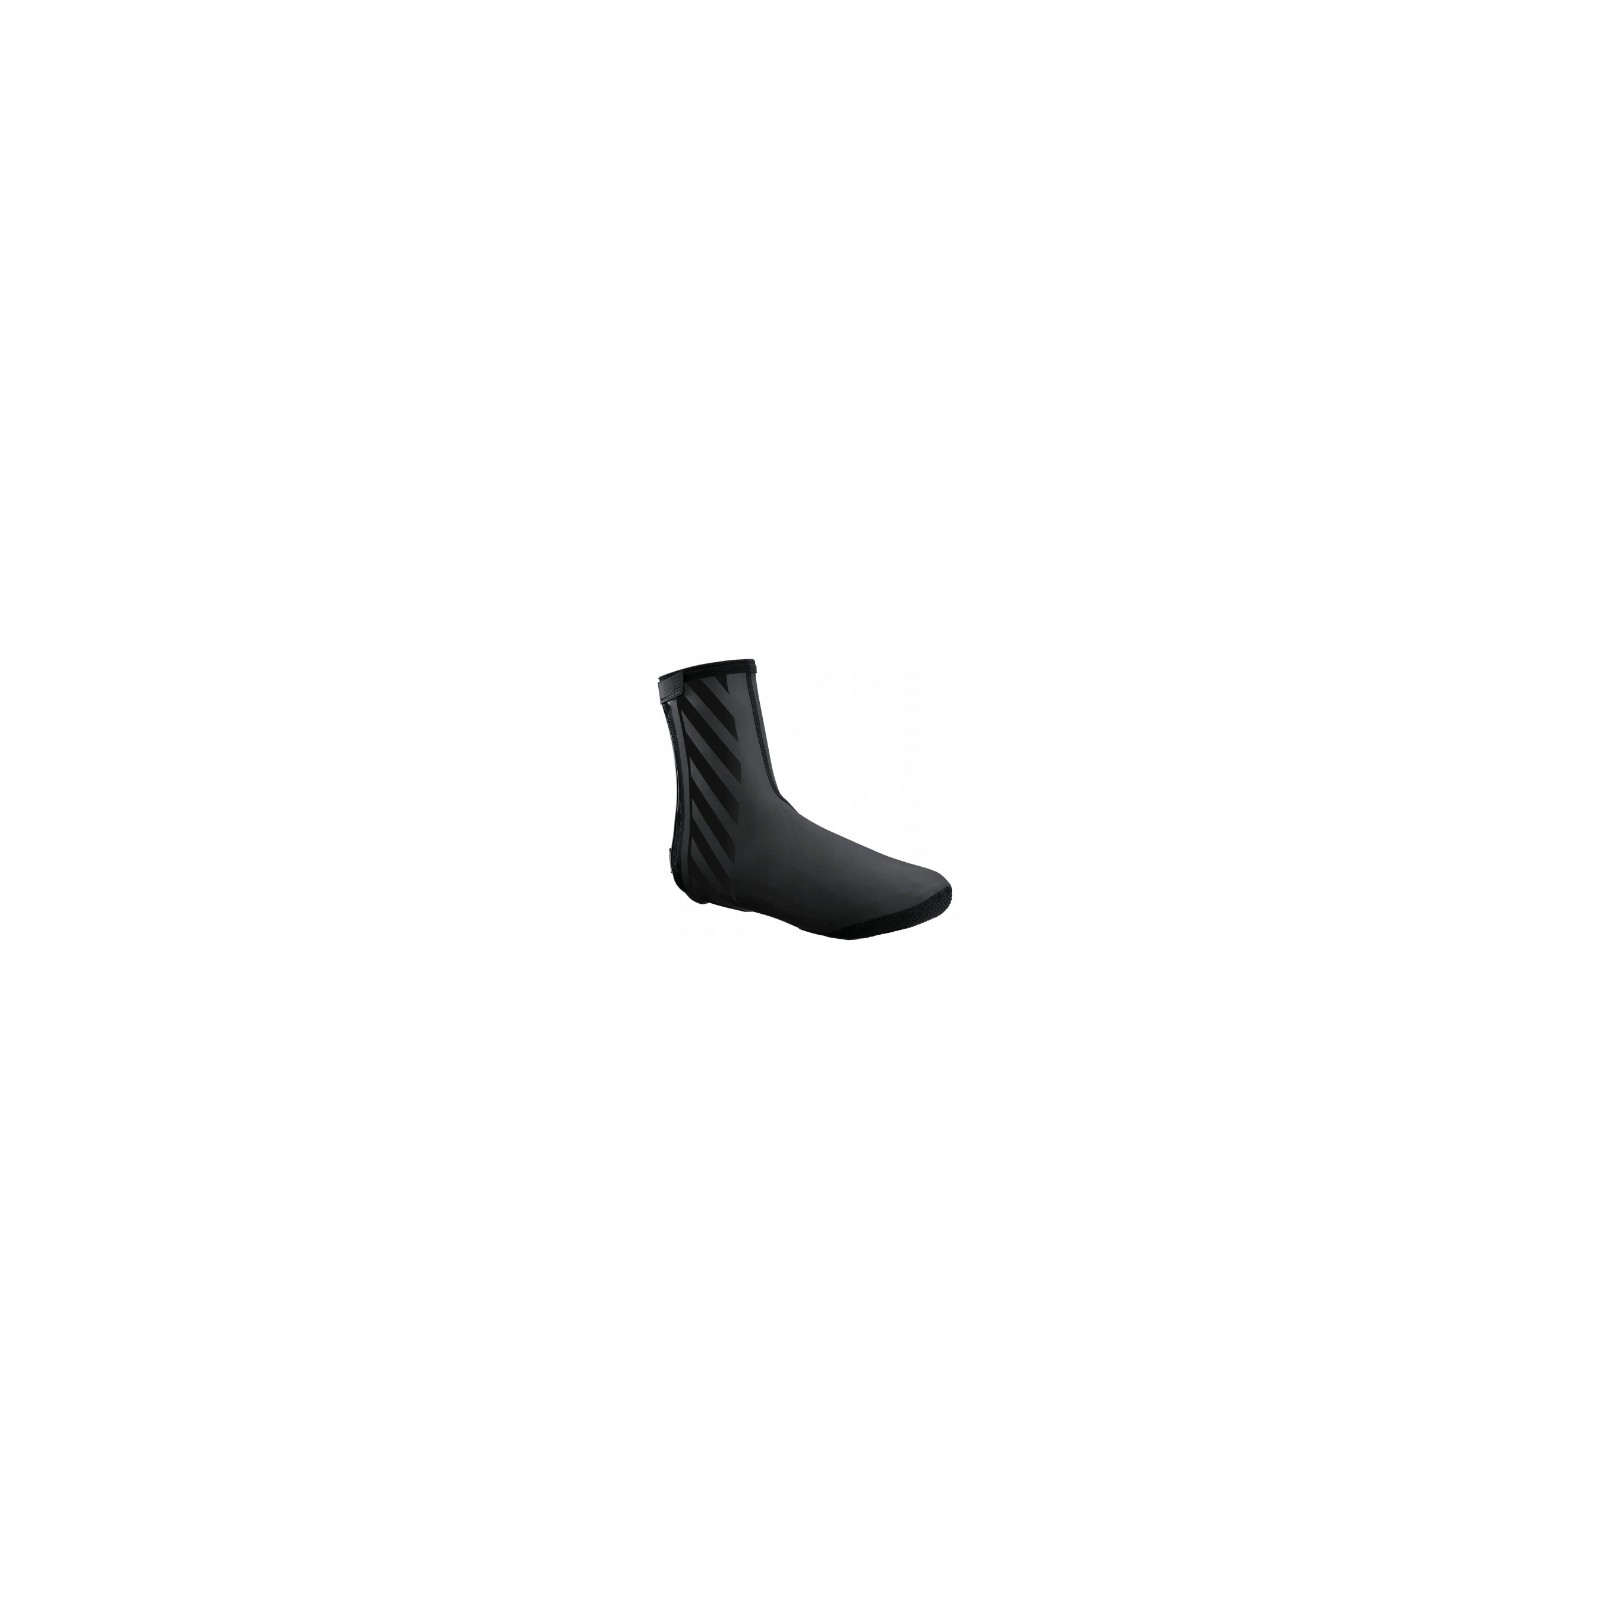 Ochraniacze na buty Shimano S1100R H20 czarne L (42-44) - CWFABWQS52UL4